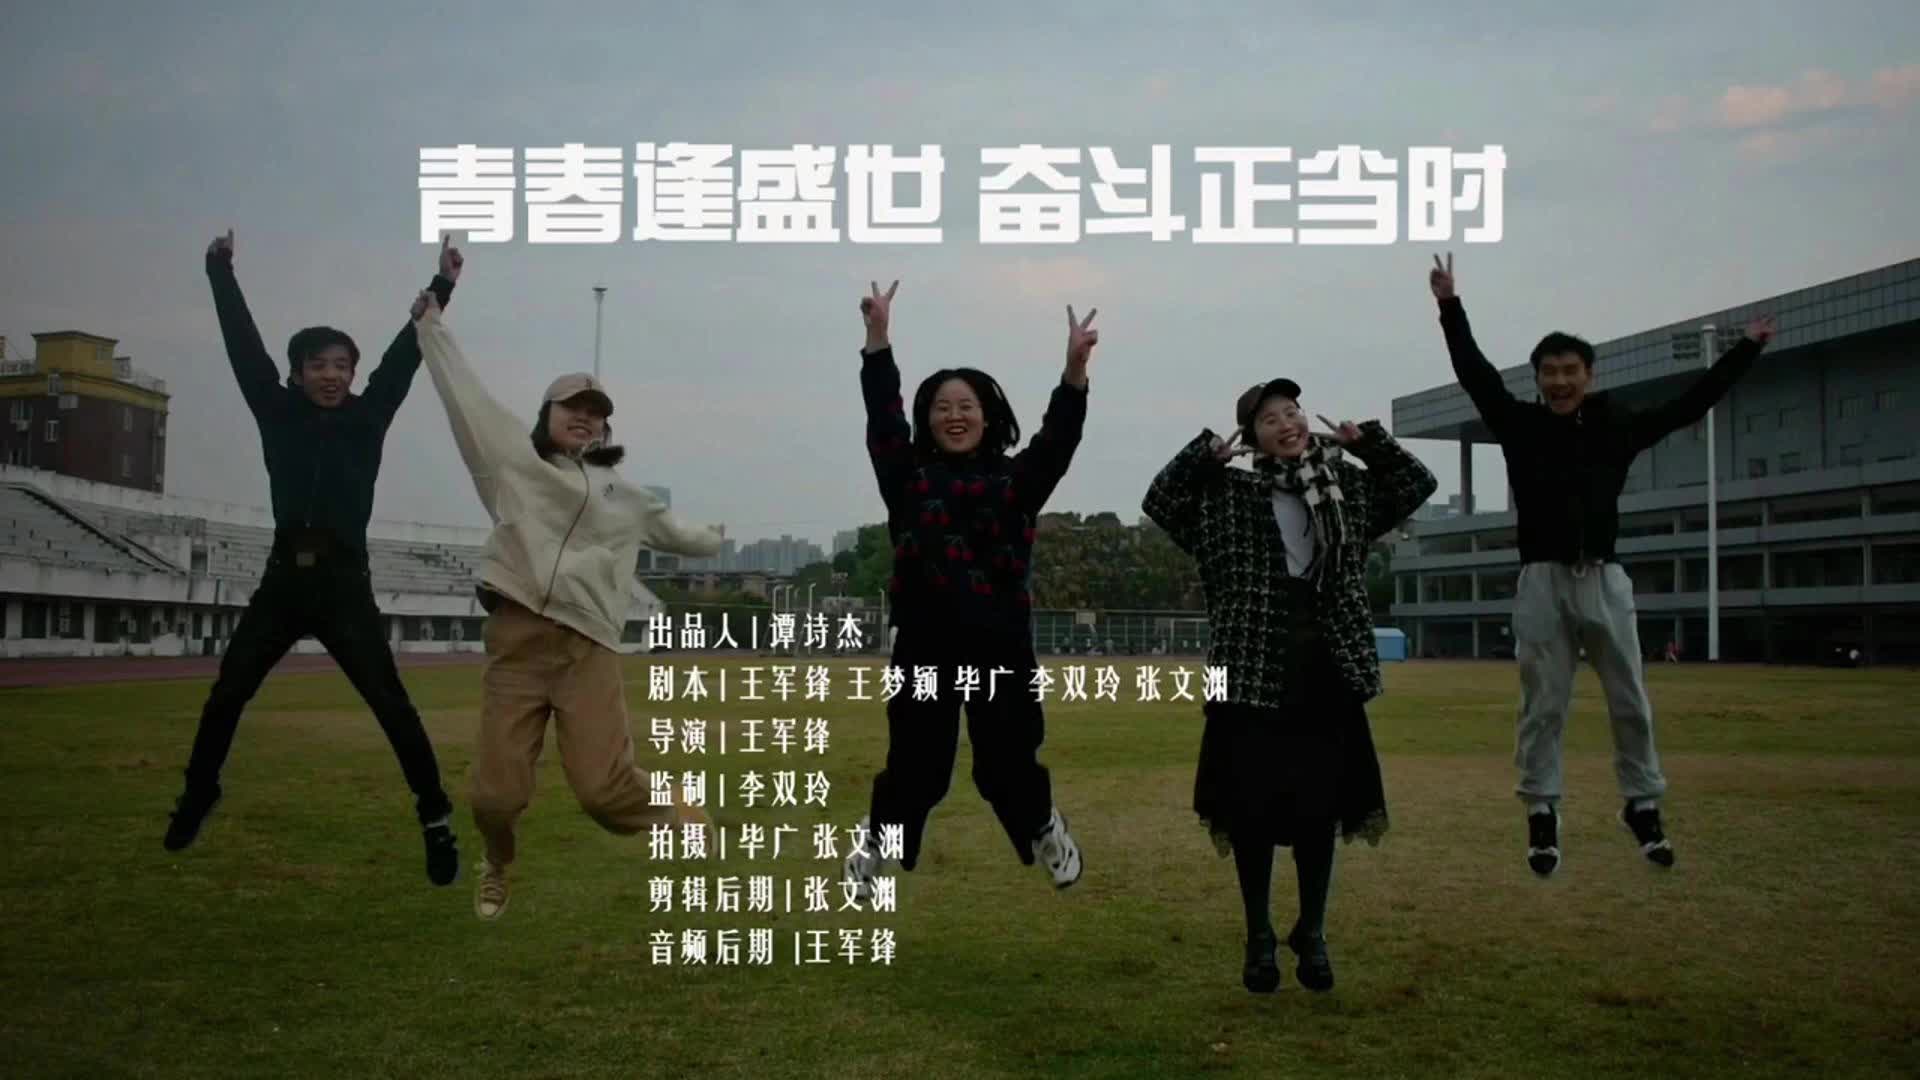 “青春学习堂”短视频大赛优秀作品——青春逢盛世 奋斗正当时